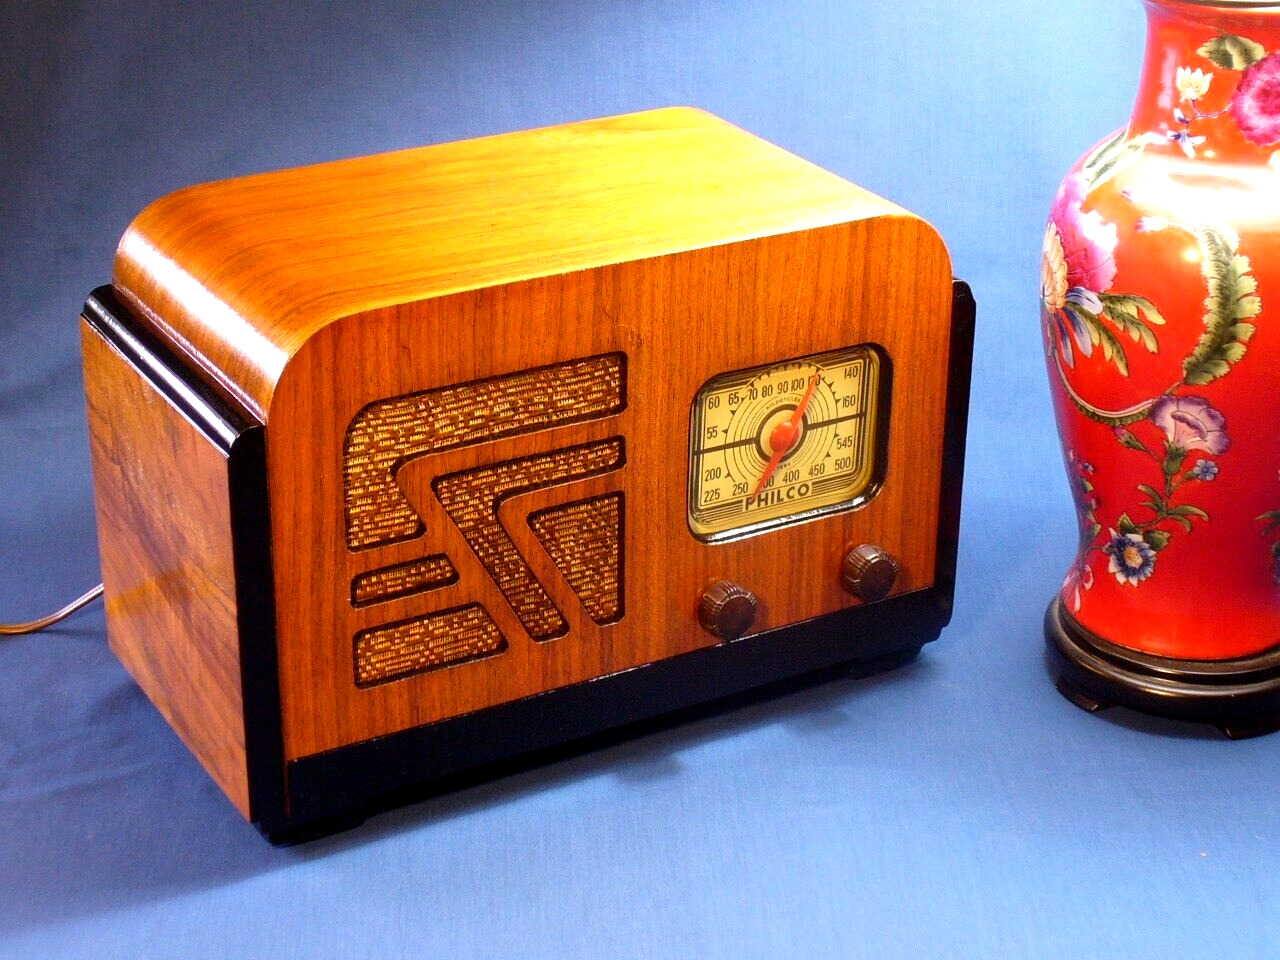 The Philco 32A Radio - a Rare Model from Canada